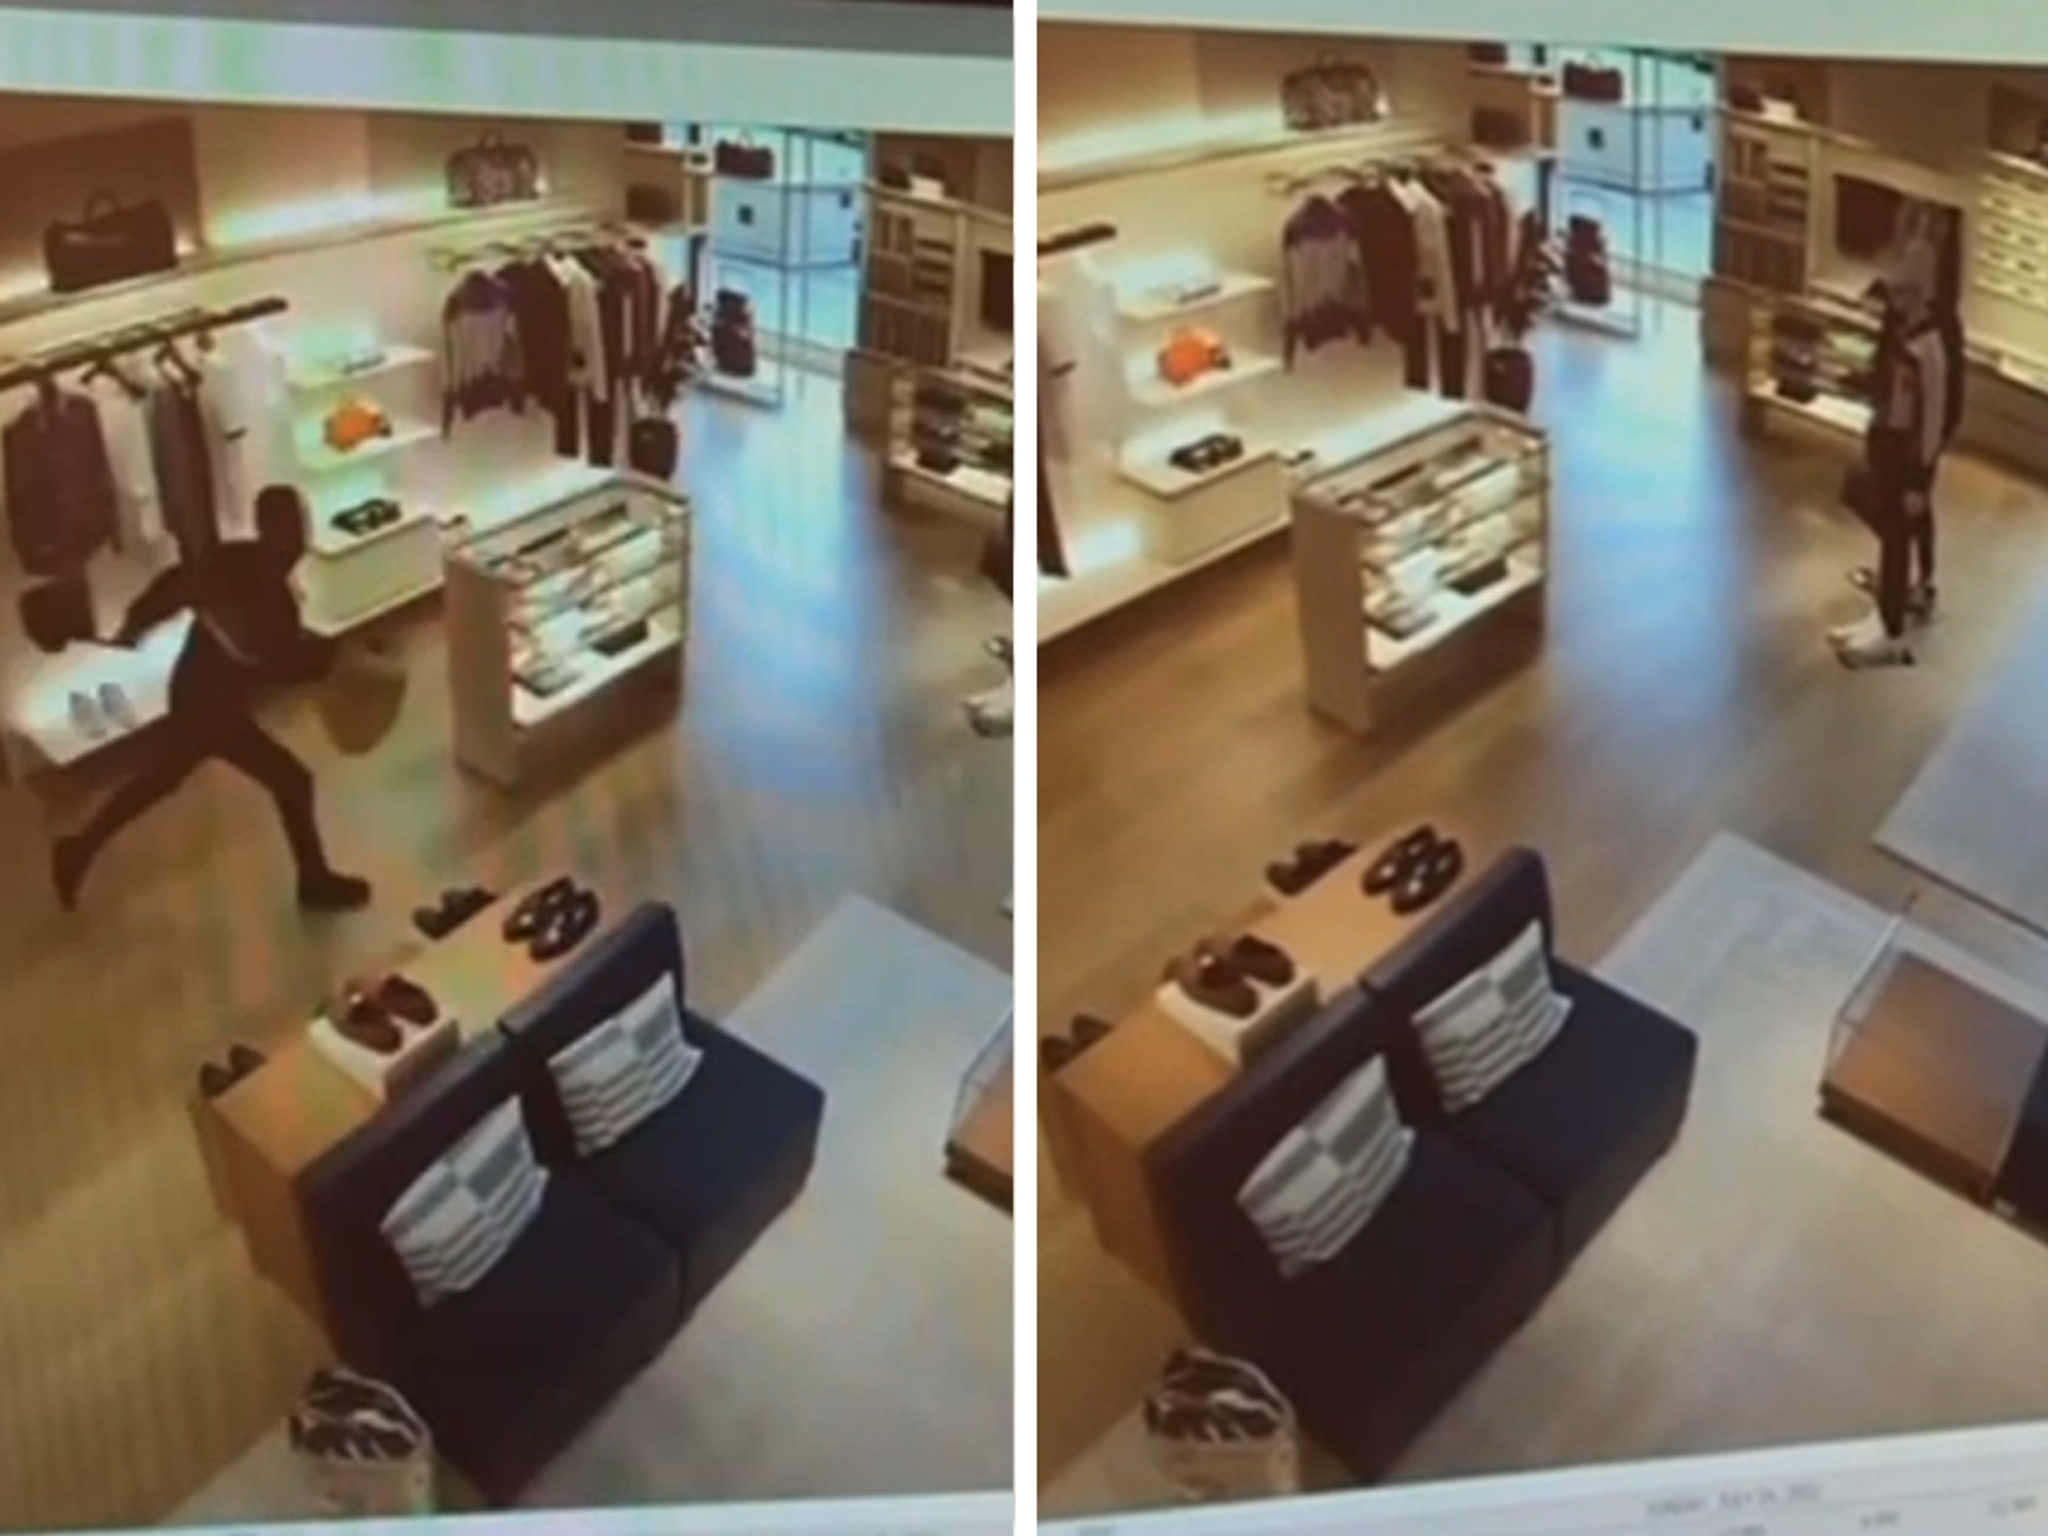 Louis Vuitton Store Robbery Chicago Bears  semashowcom